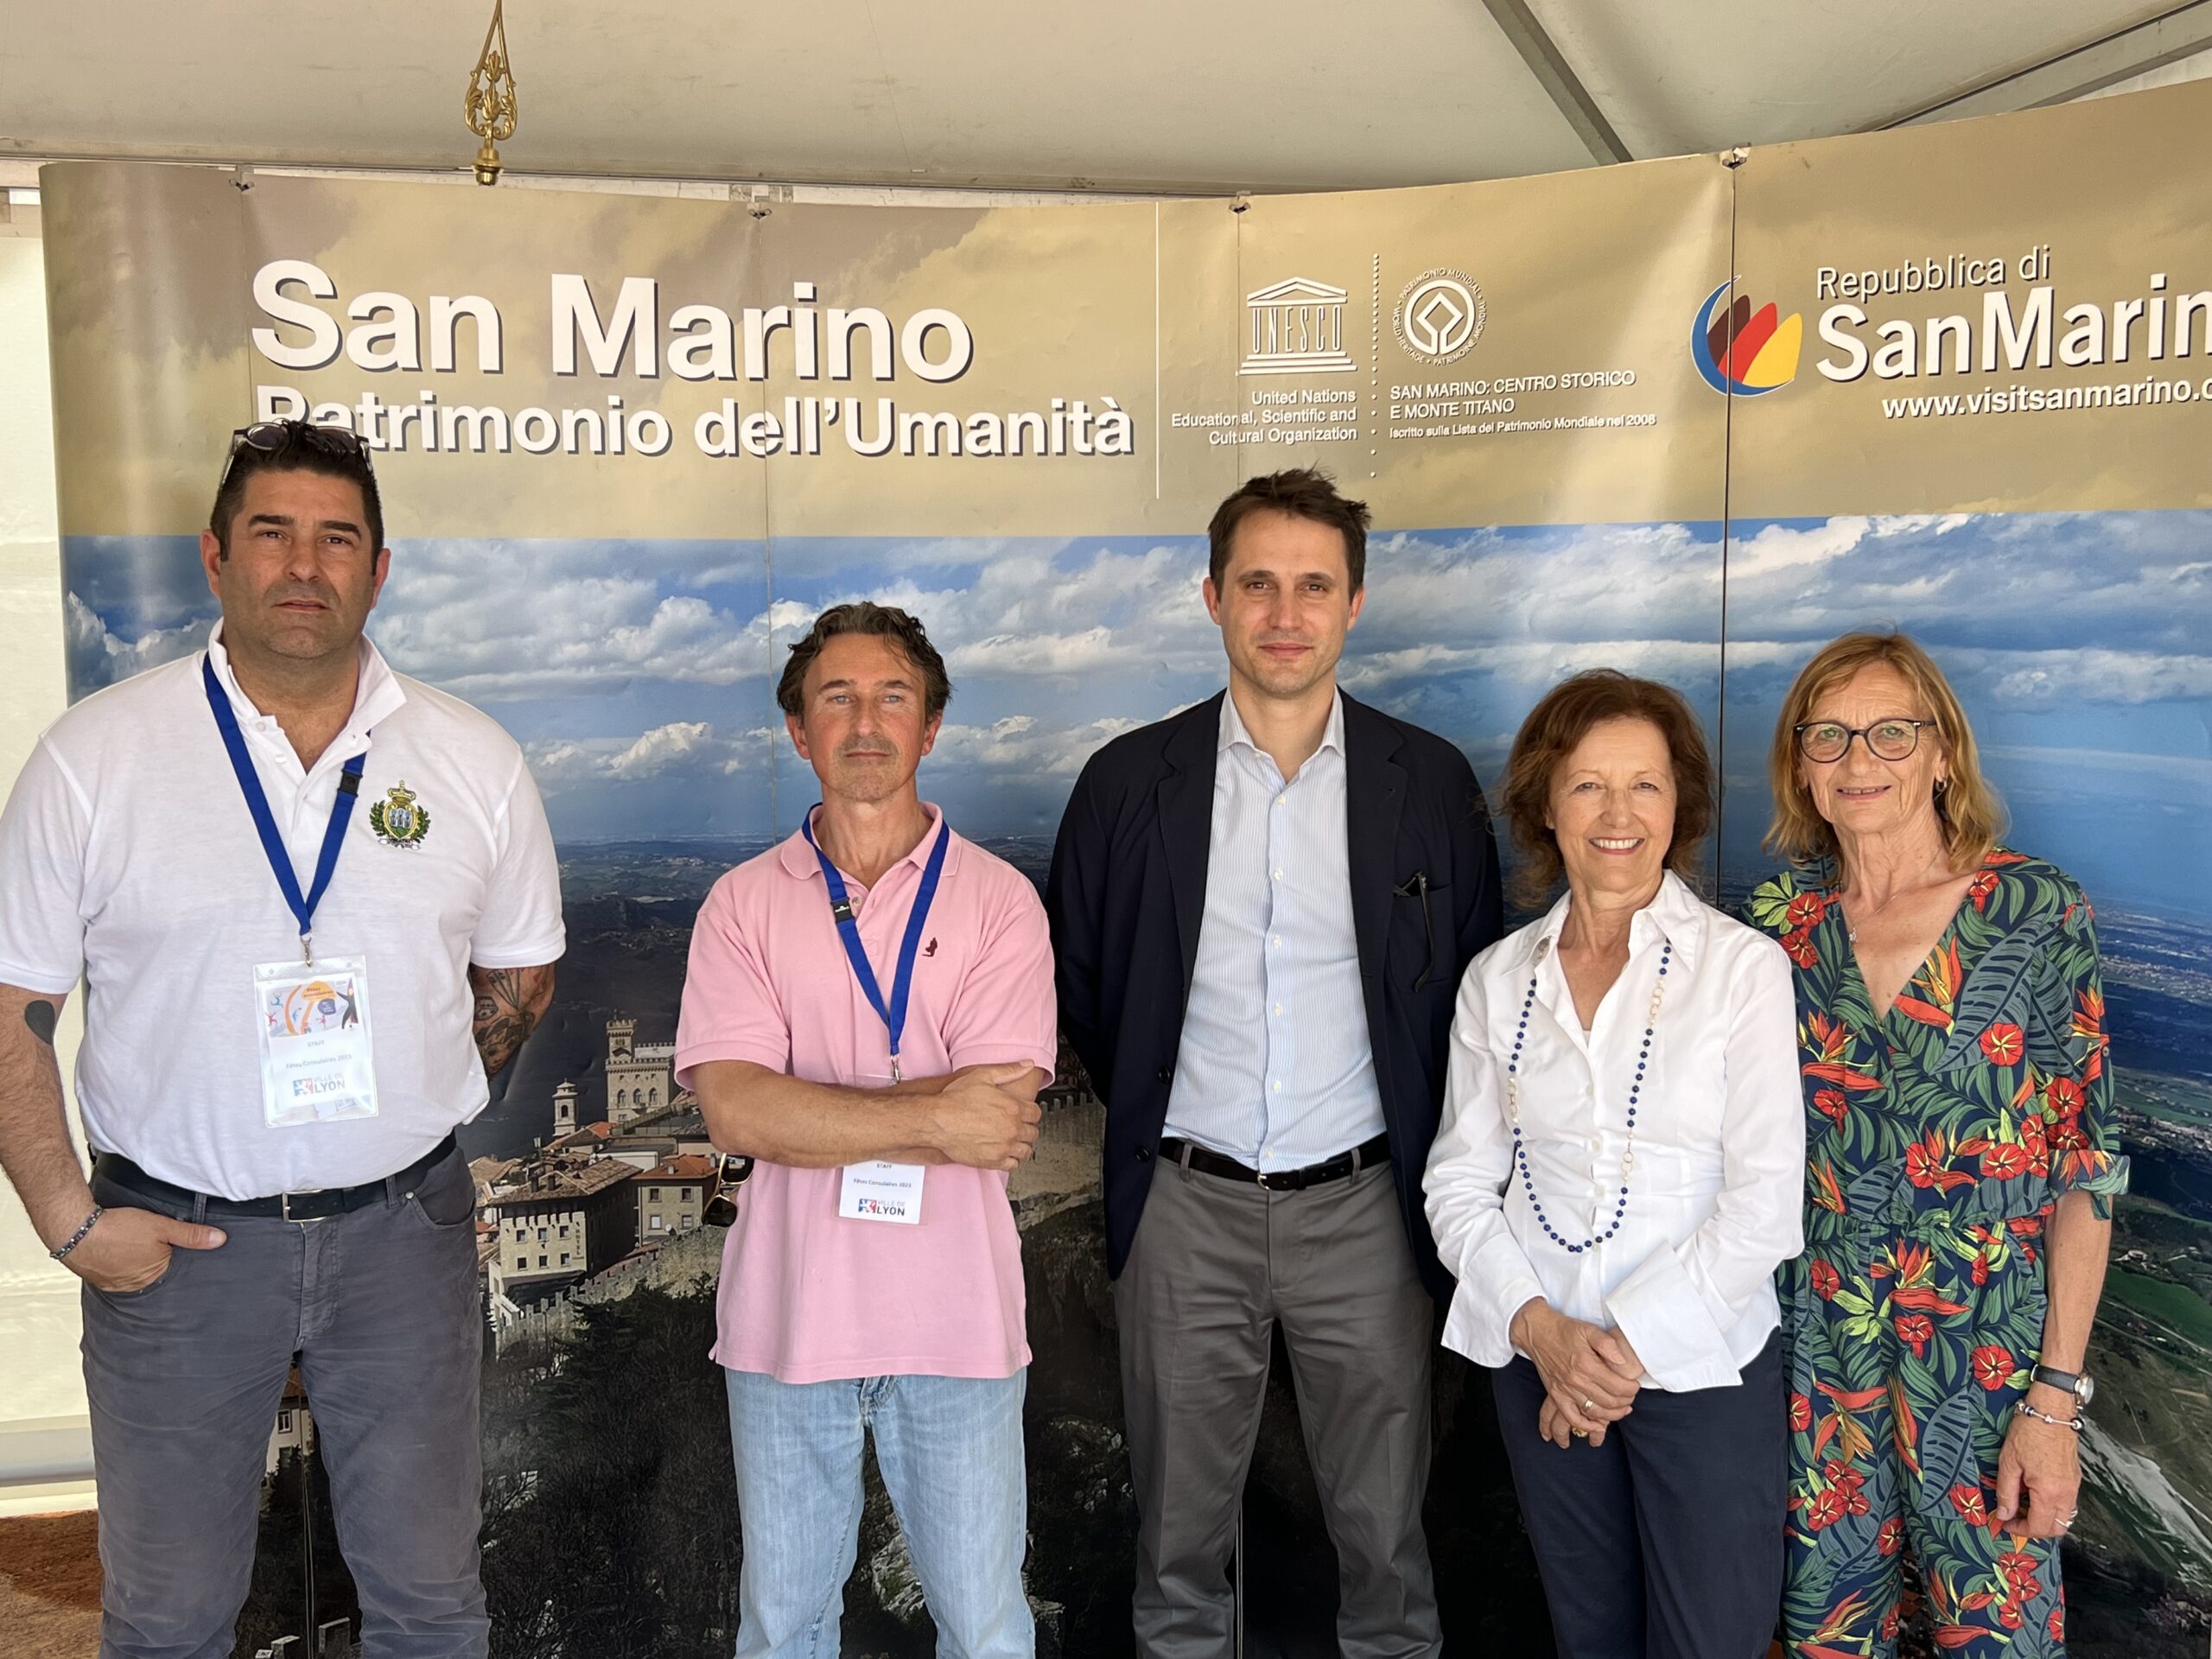 La delegazione di San Marino prende parte alle feste consolari di Lione